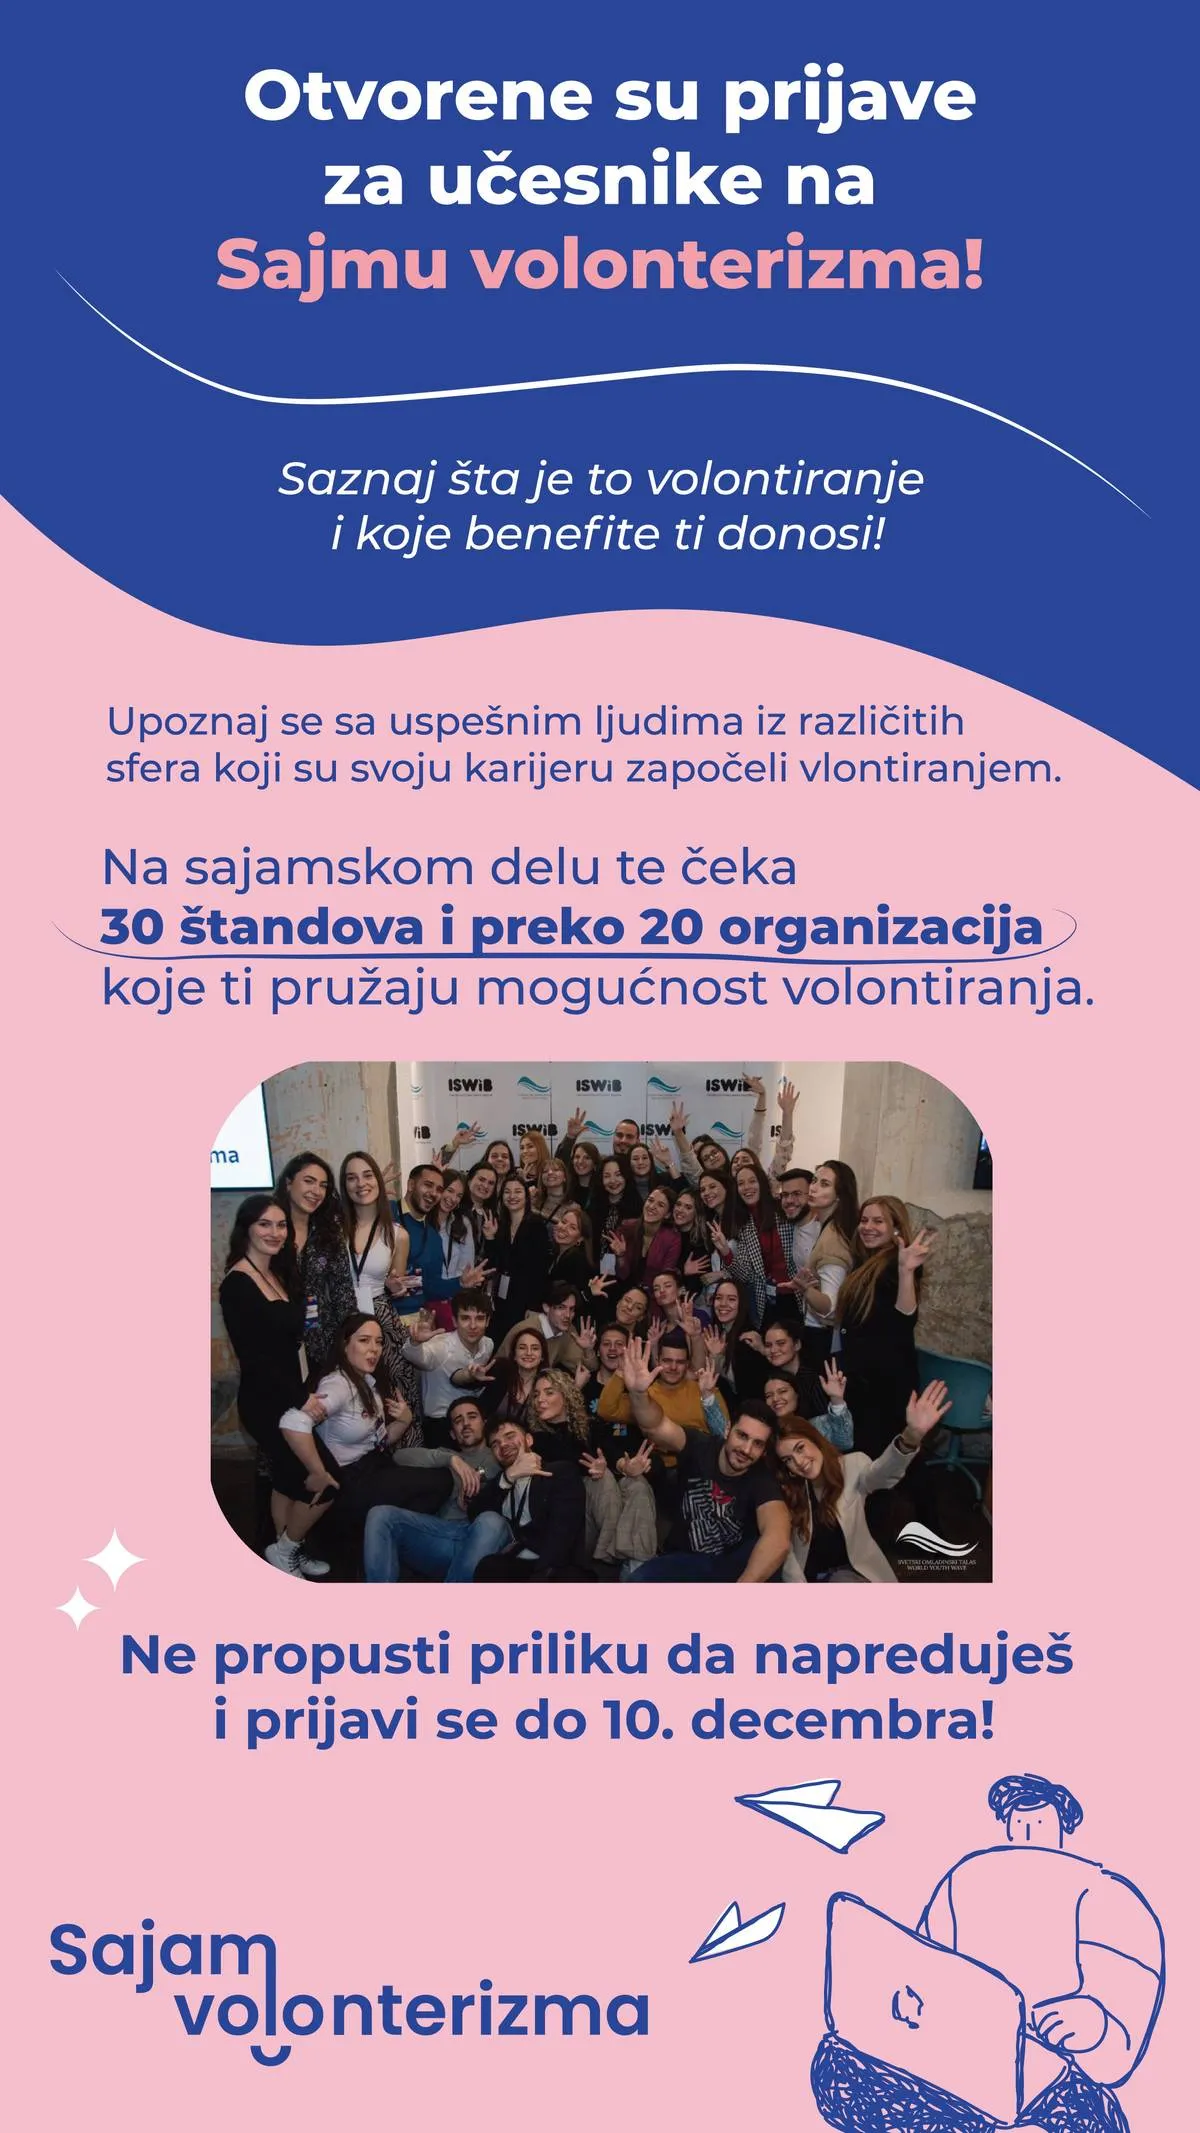 Sajam volonterizma ponovo u Beogradu!